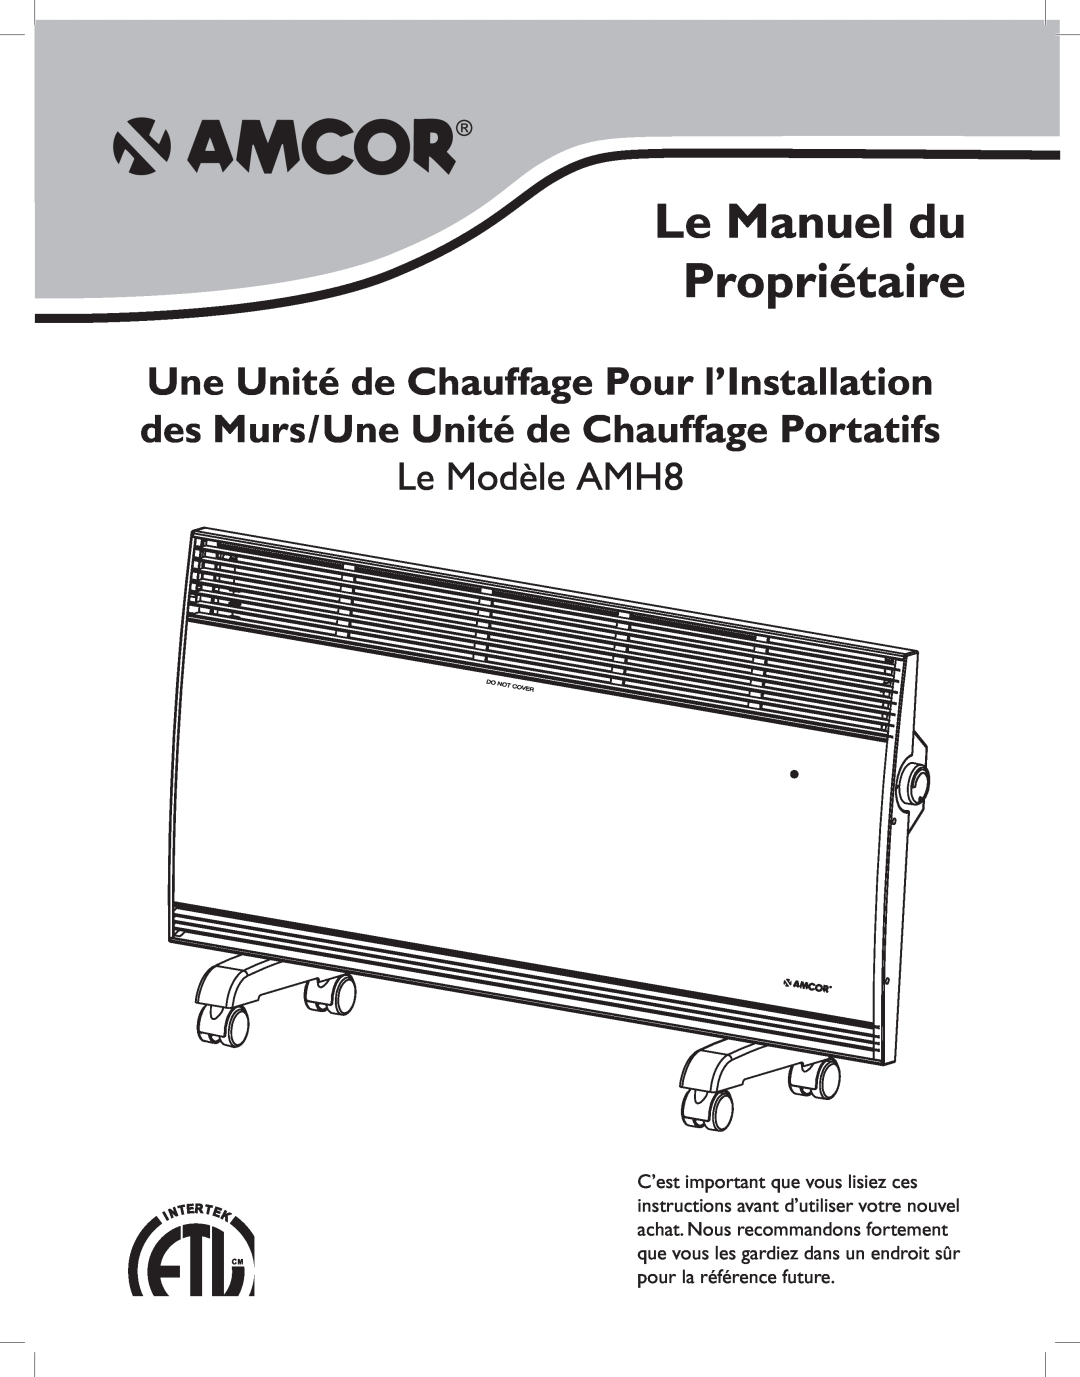 Amcor owner manual Le Manuel du Propriétaire, Le Modèle AMH8 